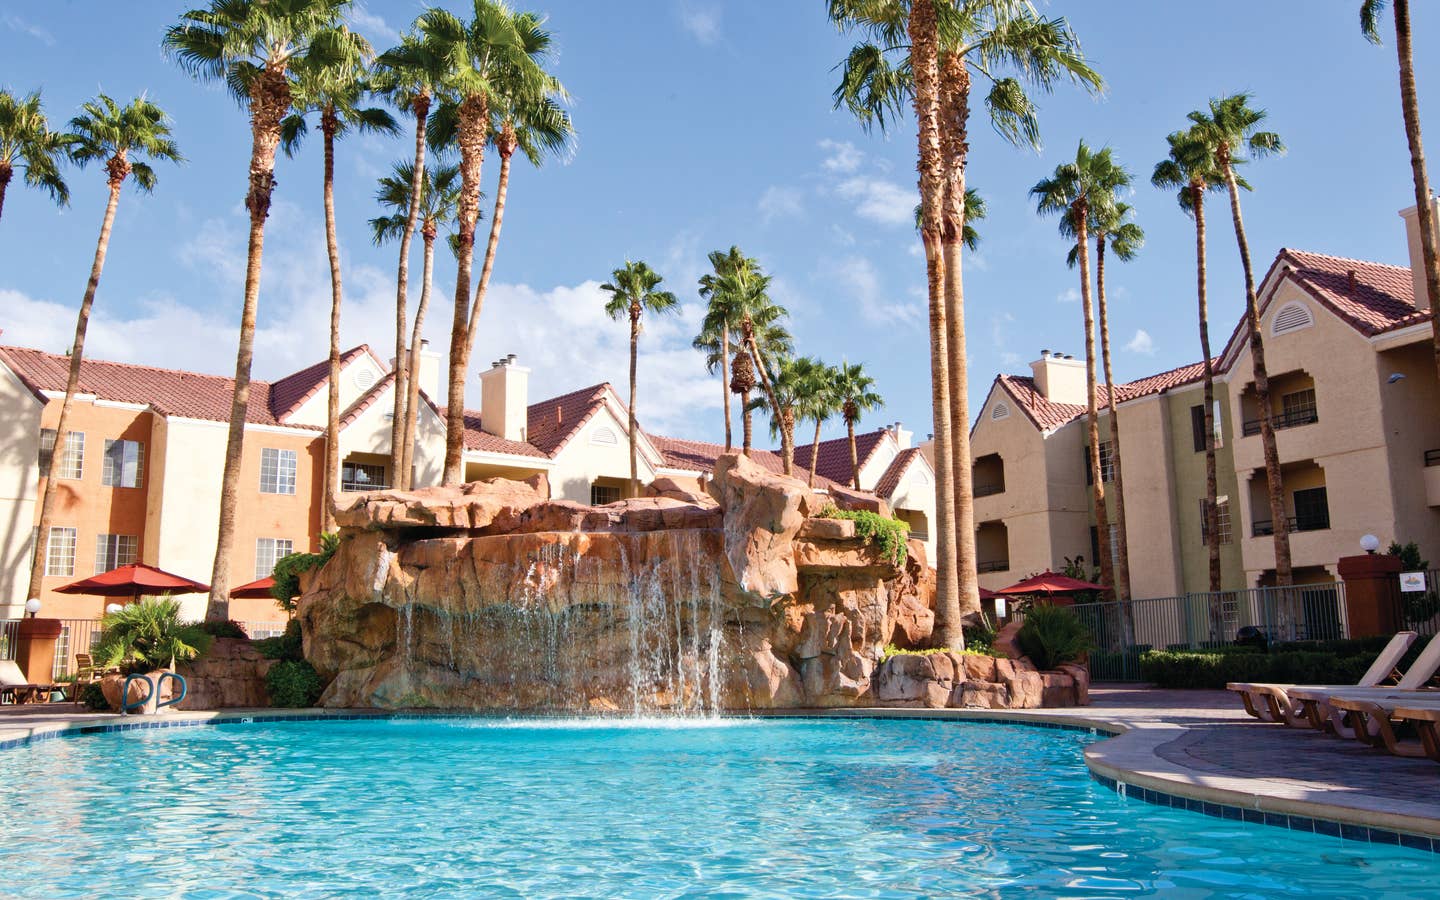 Watering Hole pool at Desert Club Resort in Las Vegas, Nevada.